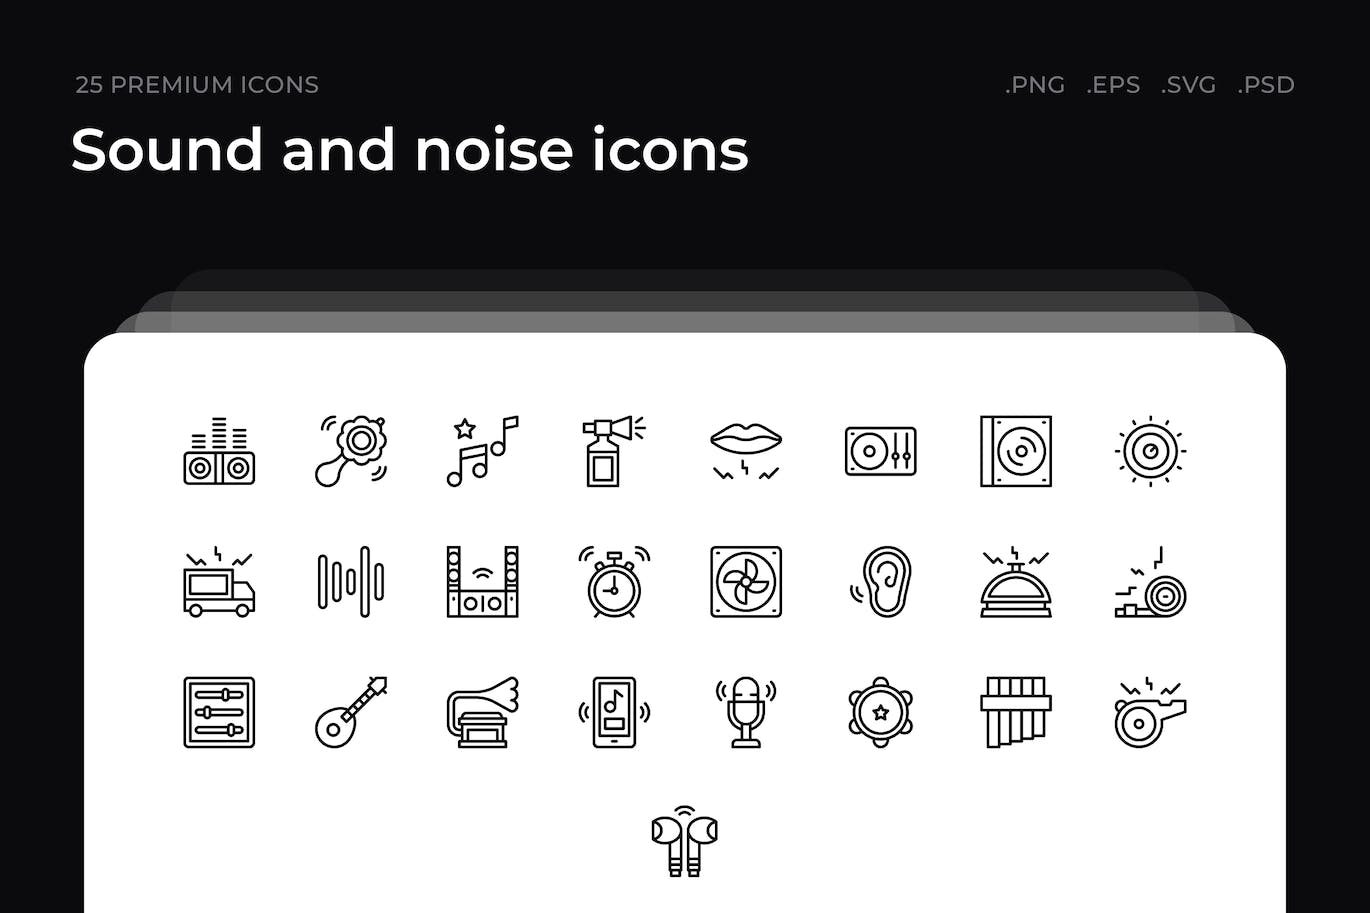 25枚声音和噪声主题简约线条矢量图标 Sound and noise icons 图标素材 第1张